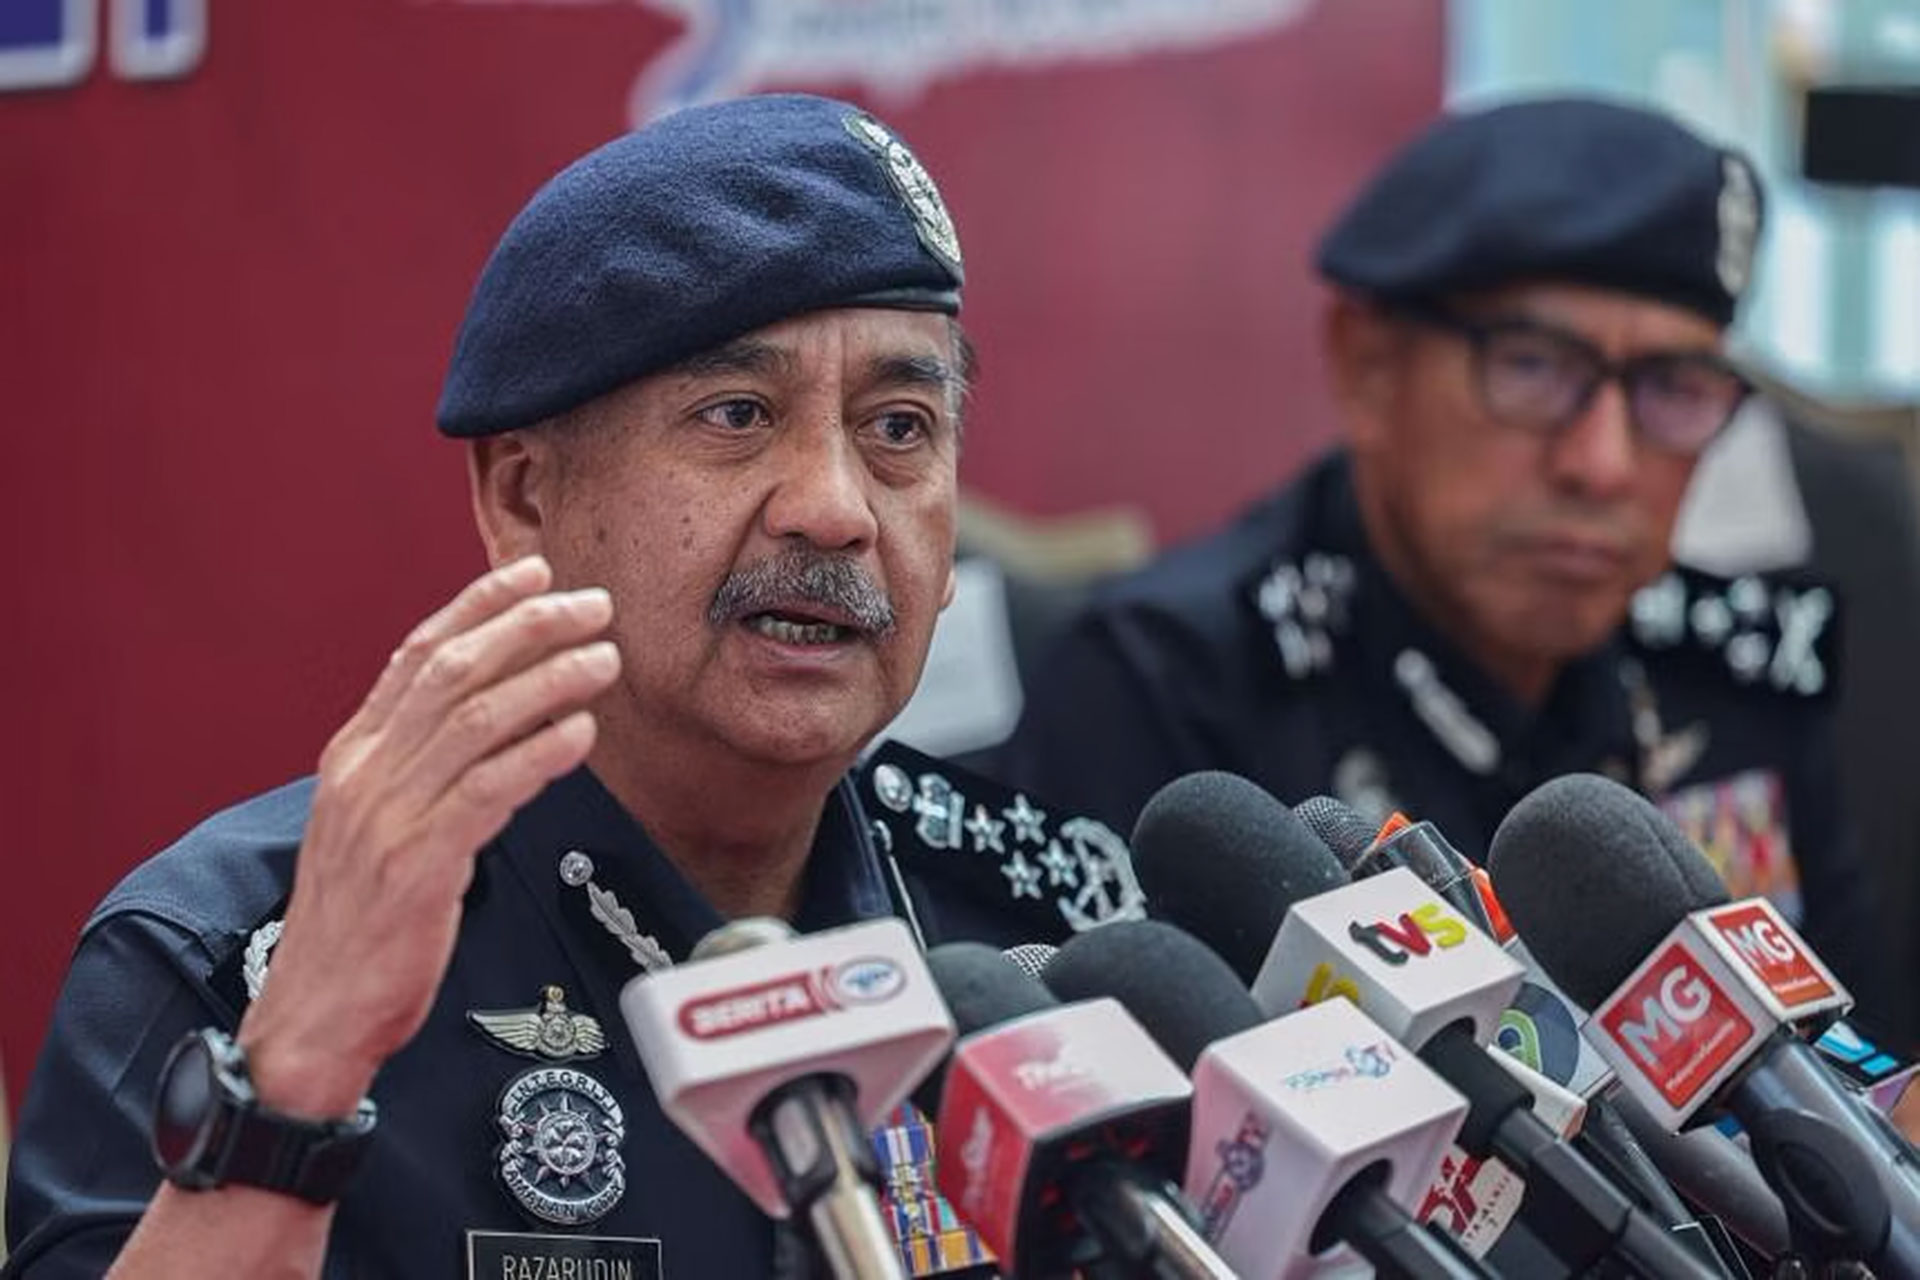 شرطة ماليزيا تعتقل إسرائيليا خطط لعملية اغتيال | أخبار – البوكس نيوز